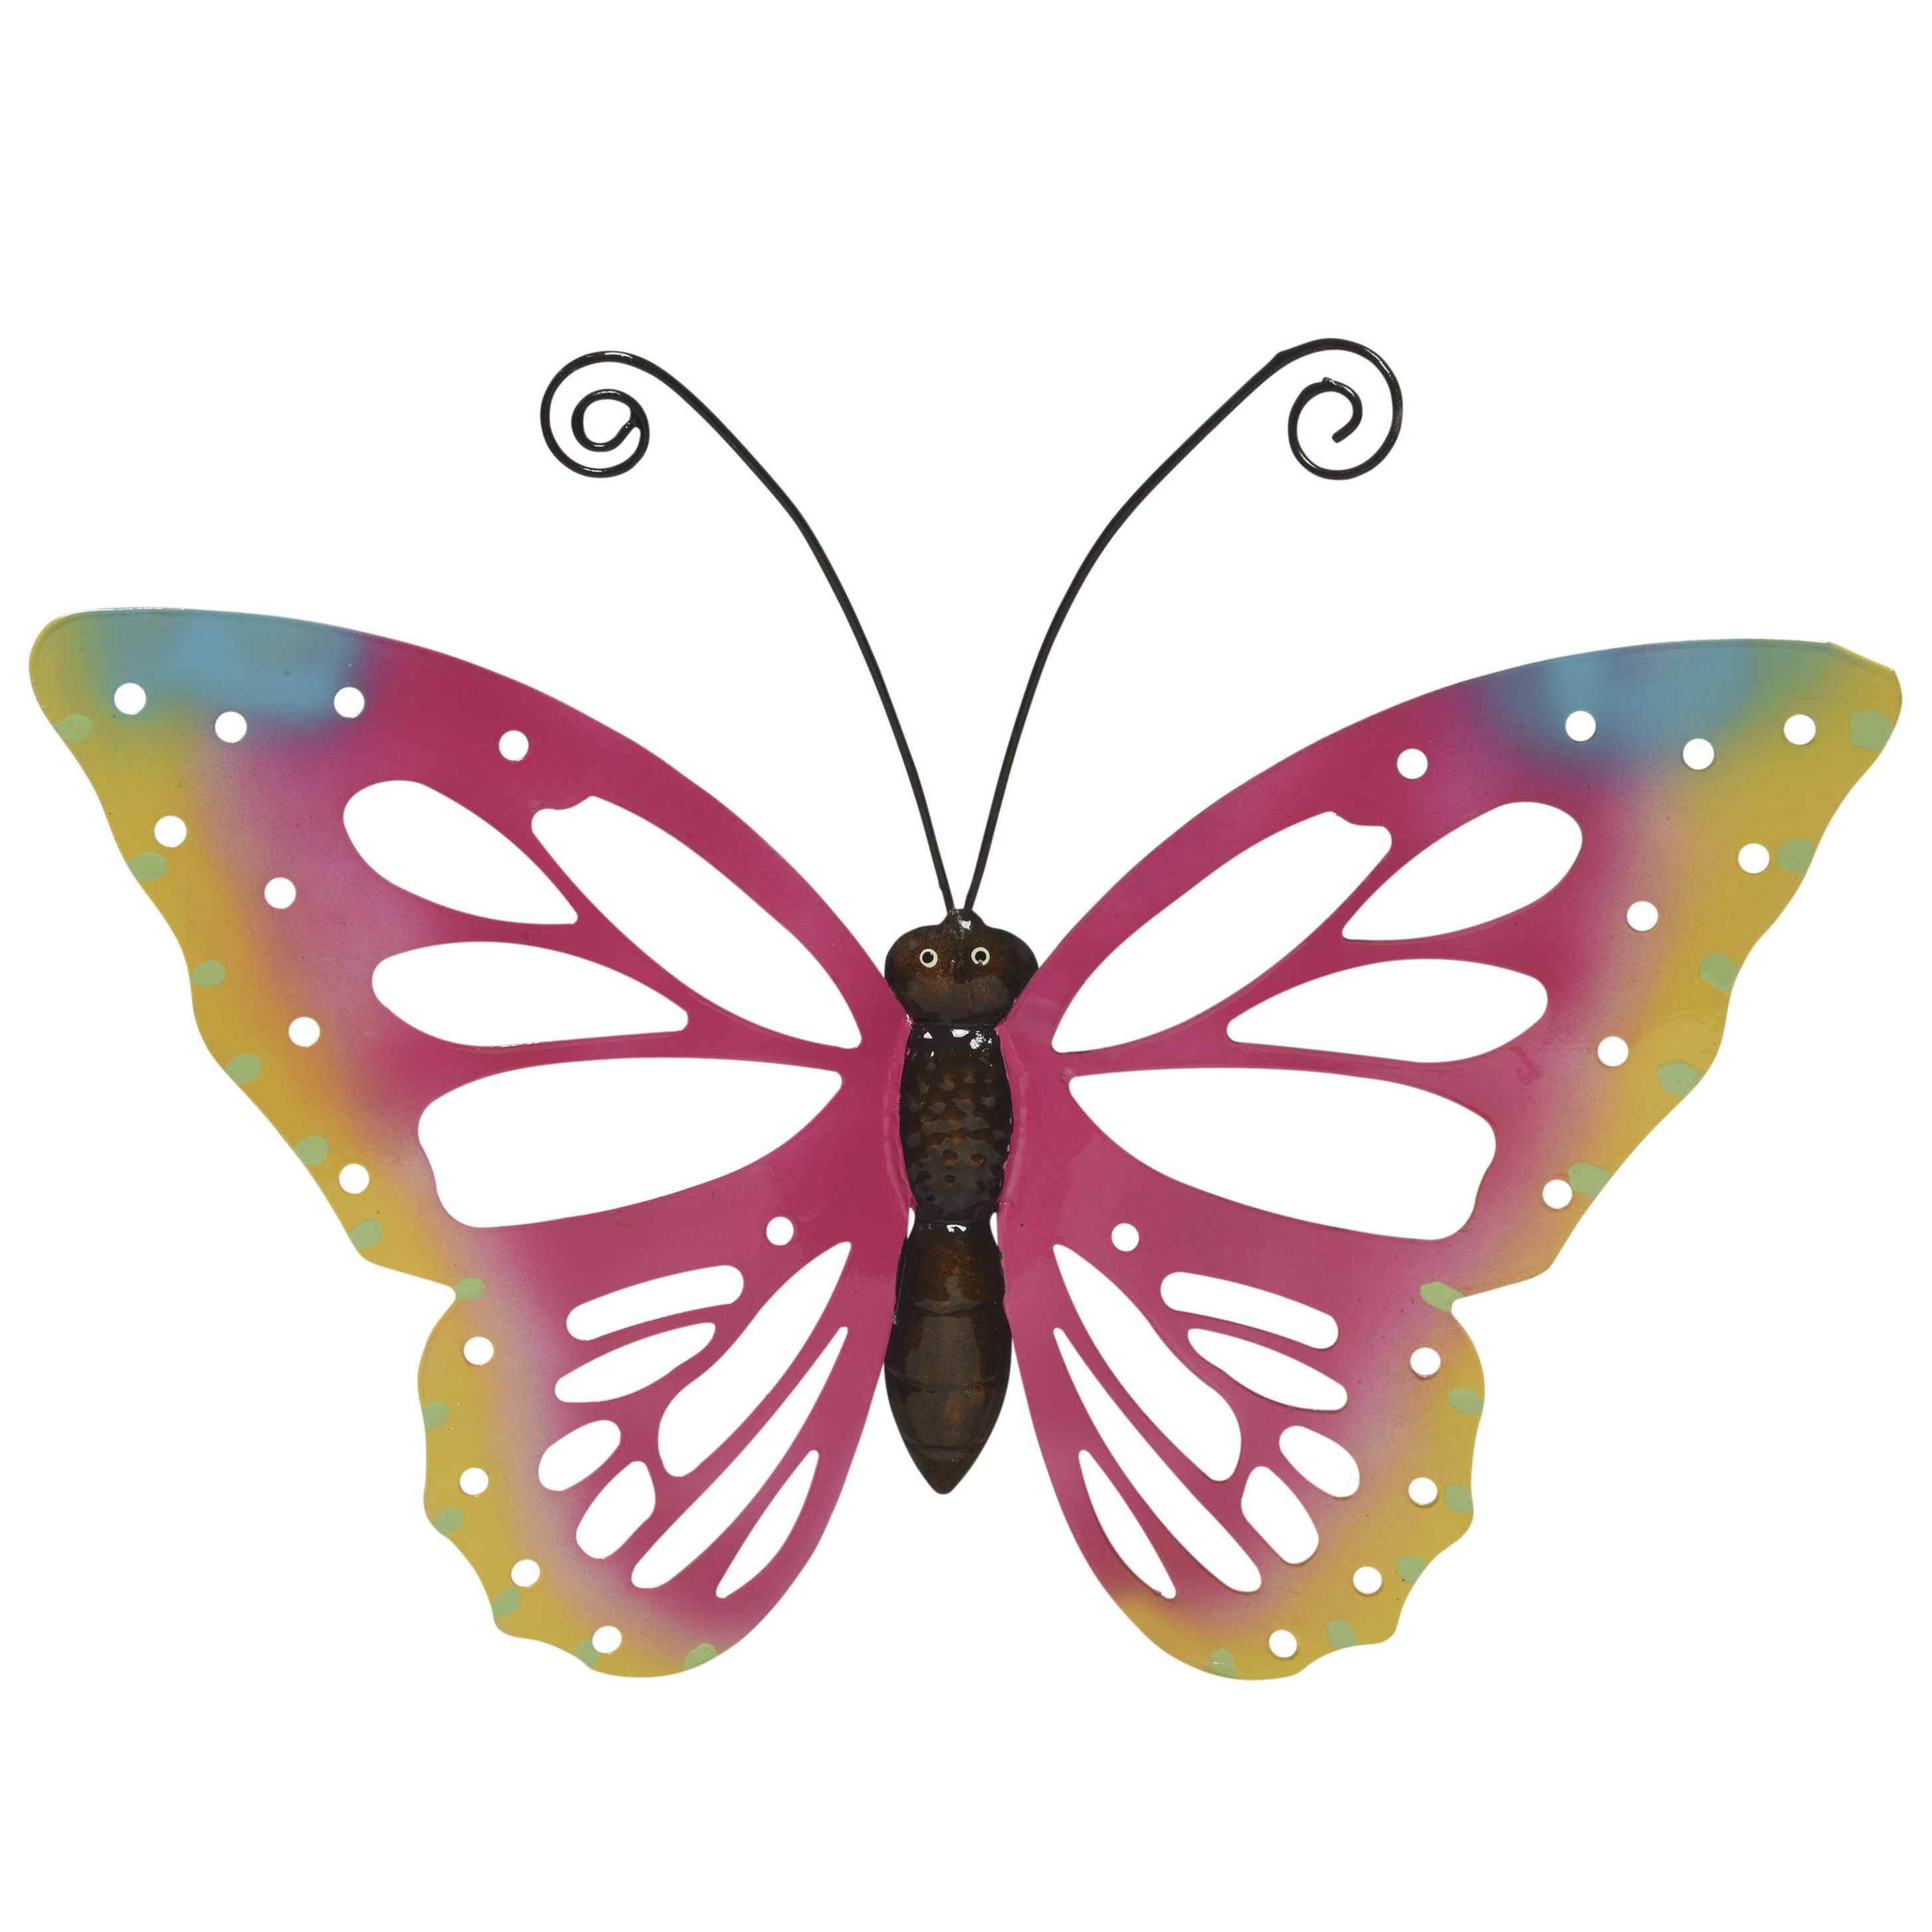 Grote roze deco vlinder-muurvlinder van metaal 51 x 38 cm tuindecoratie